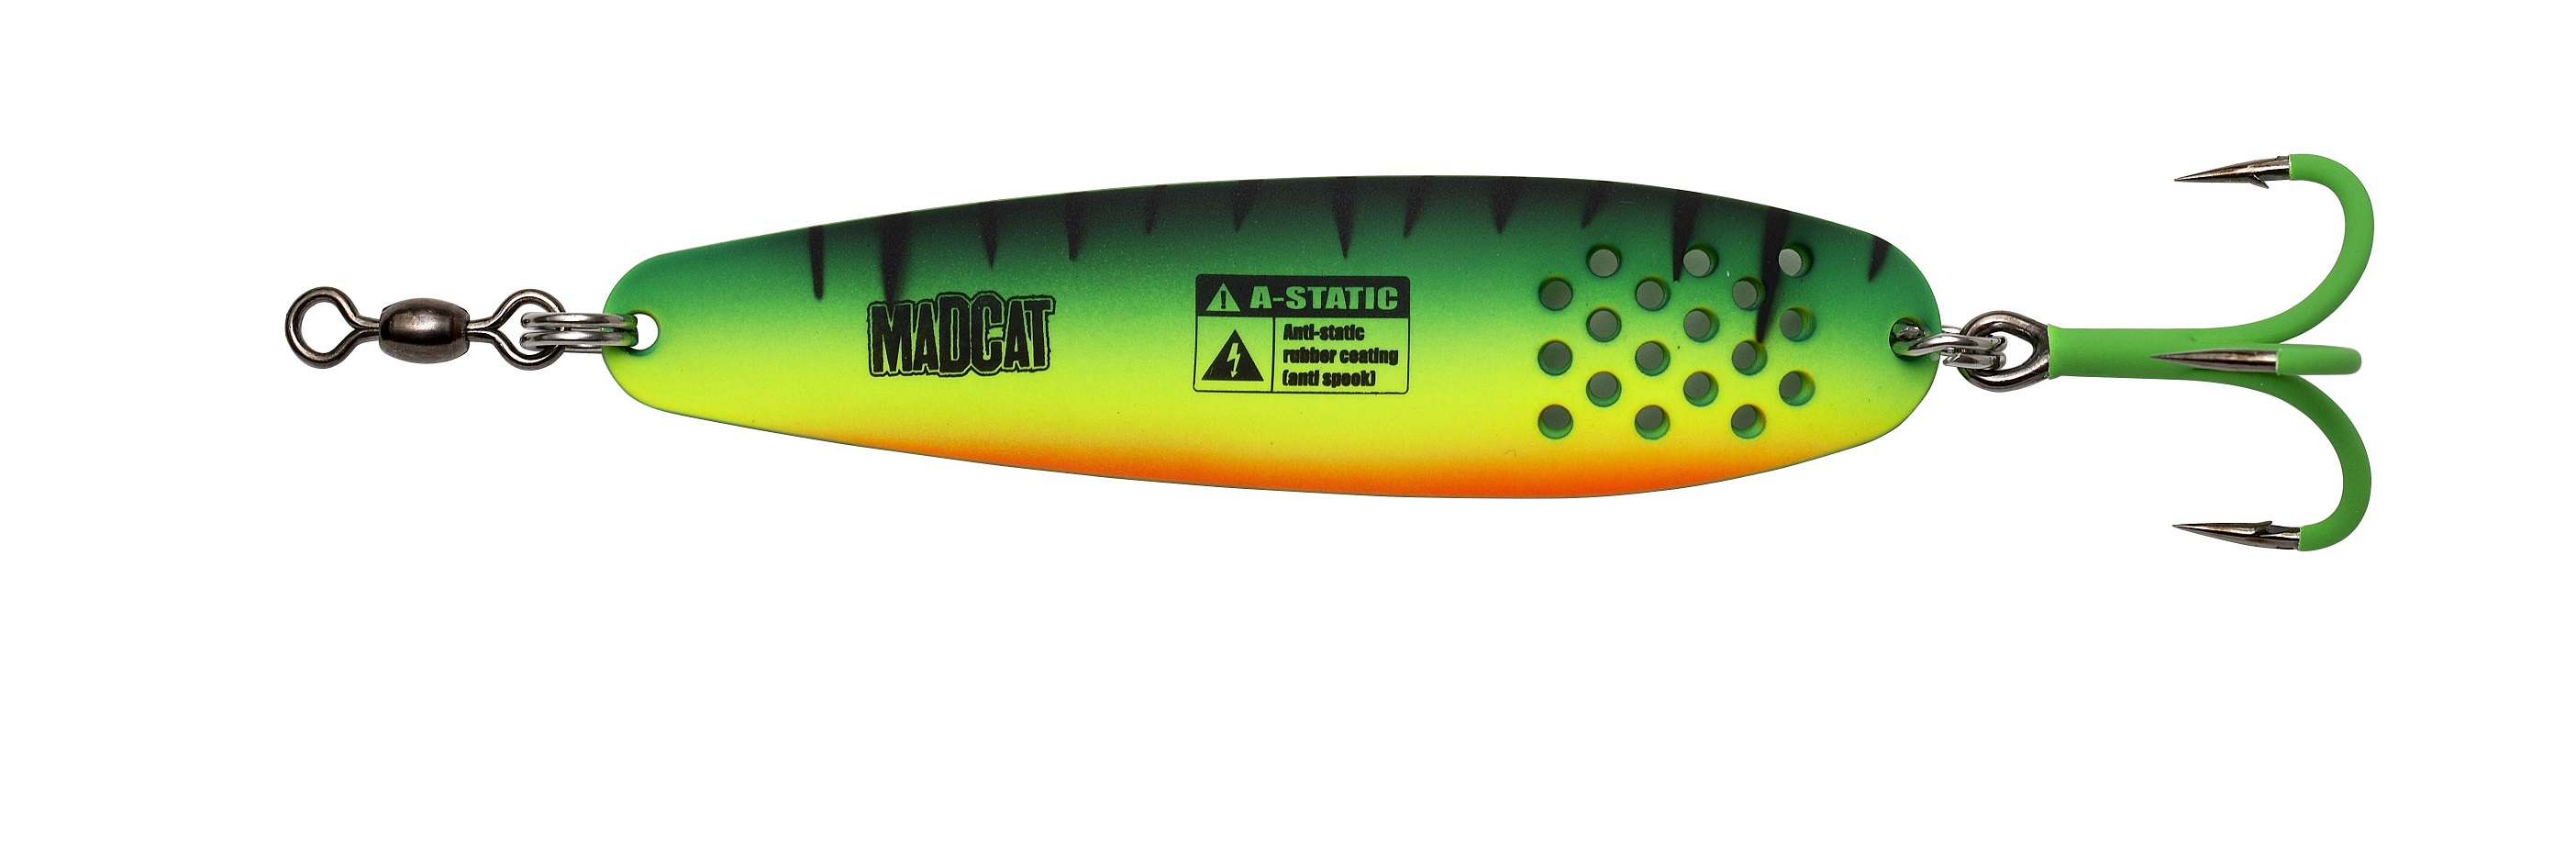 Madcat A-Static Turbine Wels Spoon (90g) - Firetiger UV